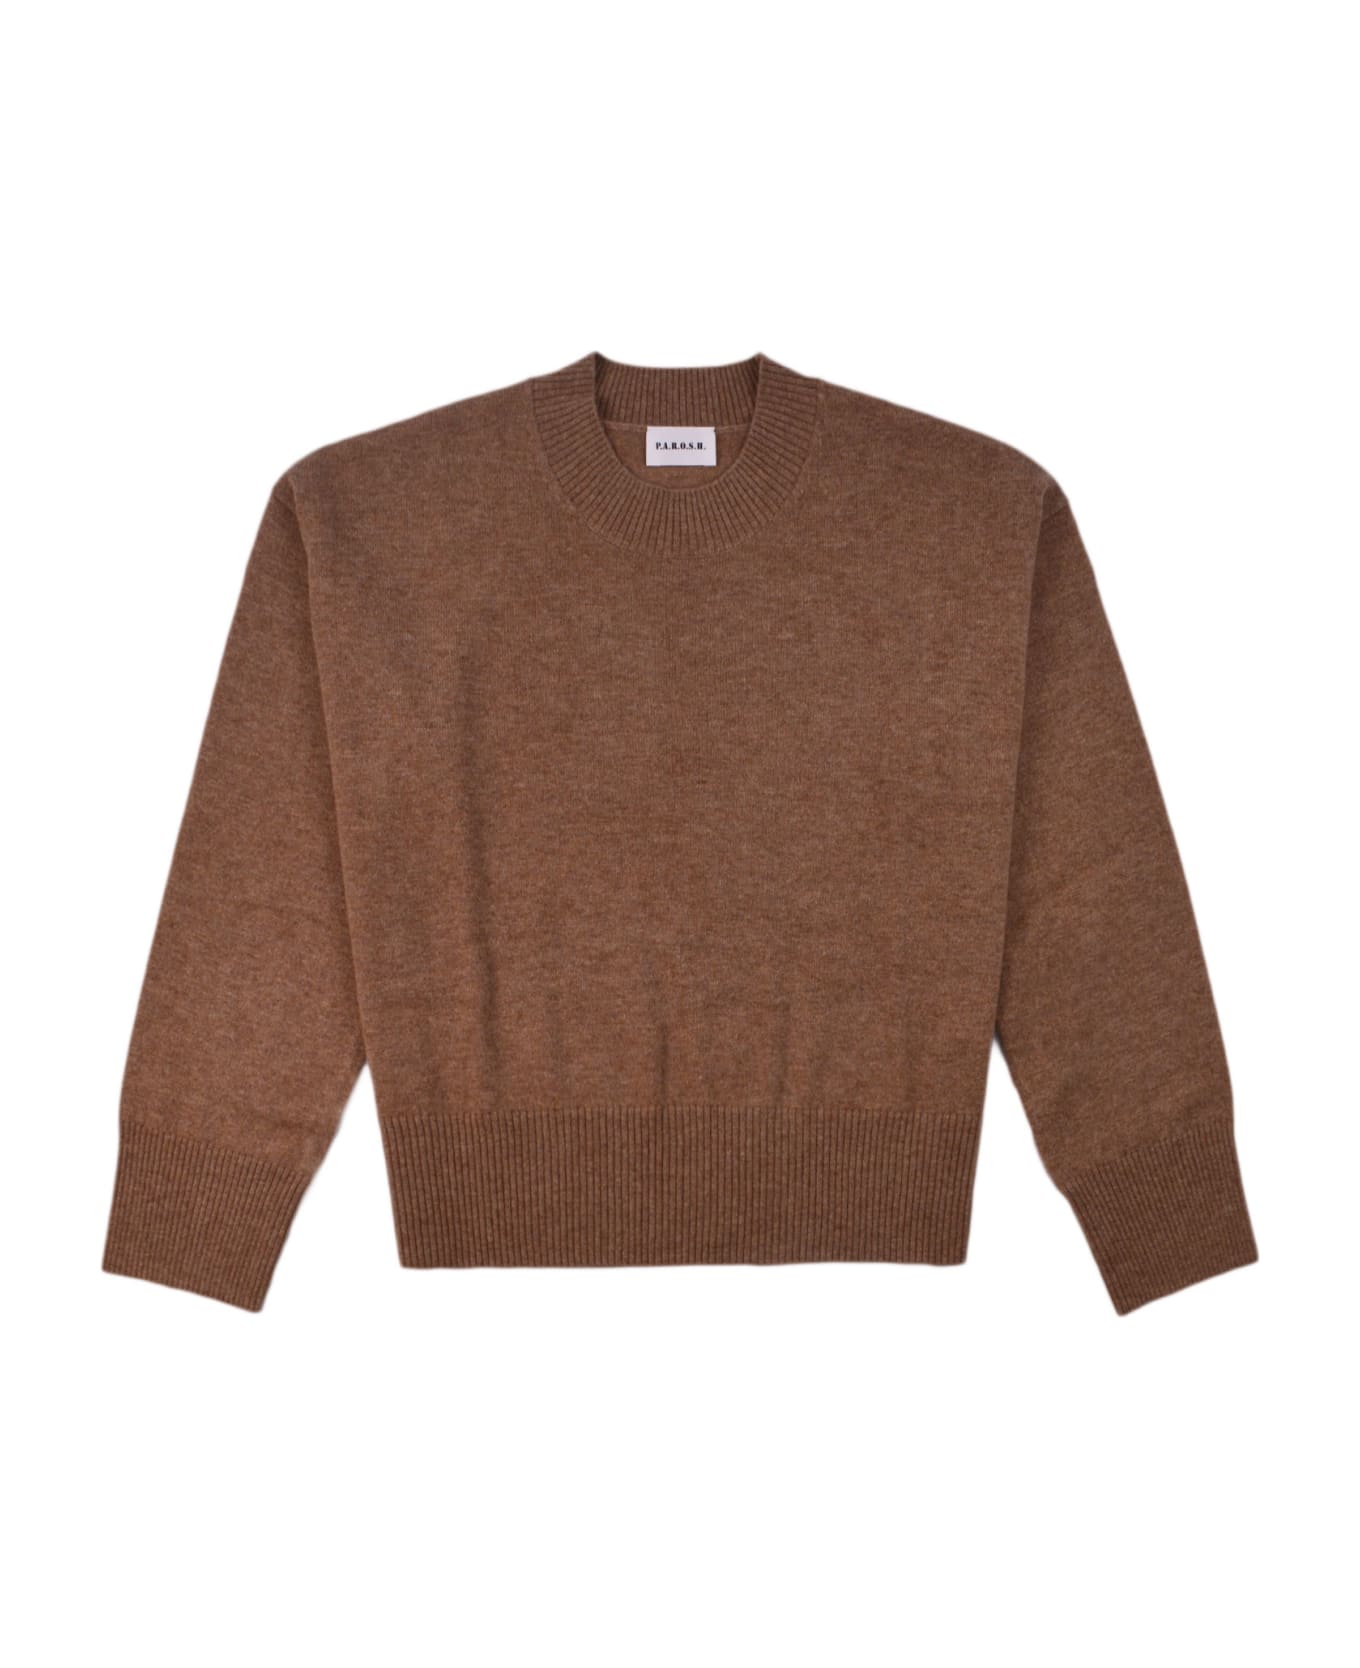 Parosh Sweater - Beige